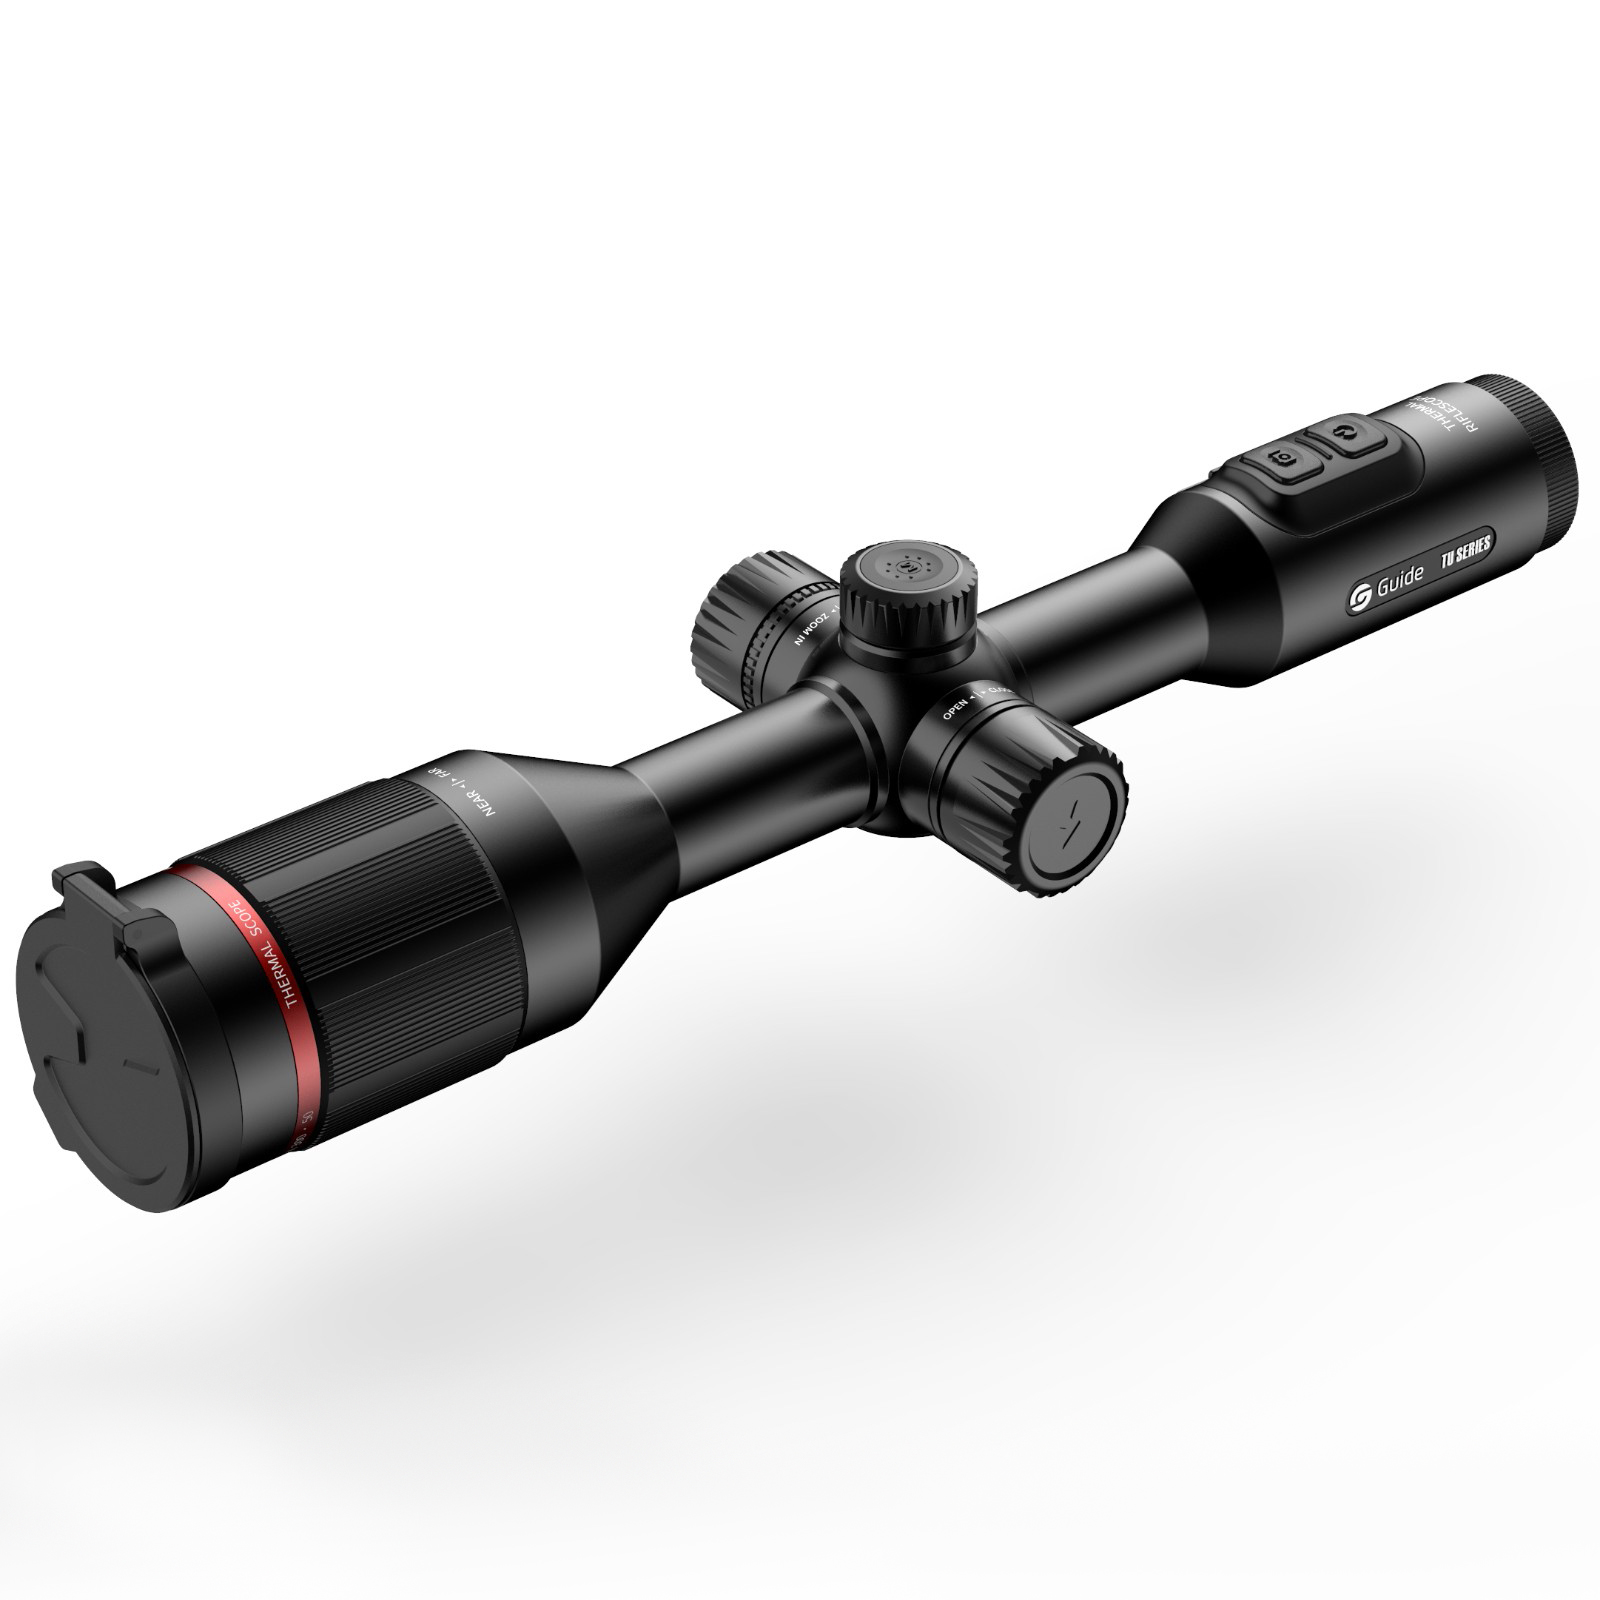 高德智感TU450瞄准镜式红外热像仪图片